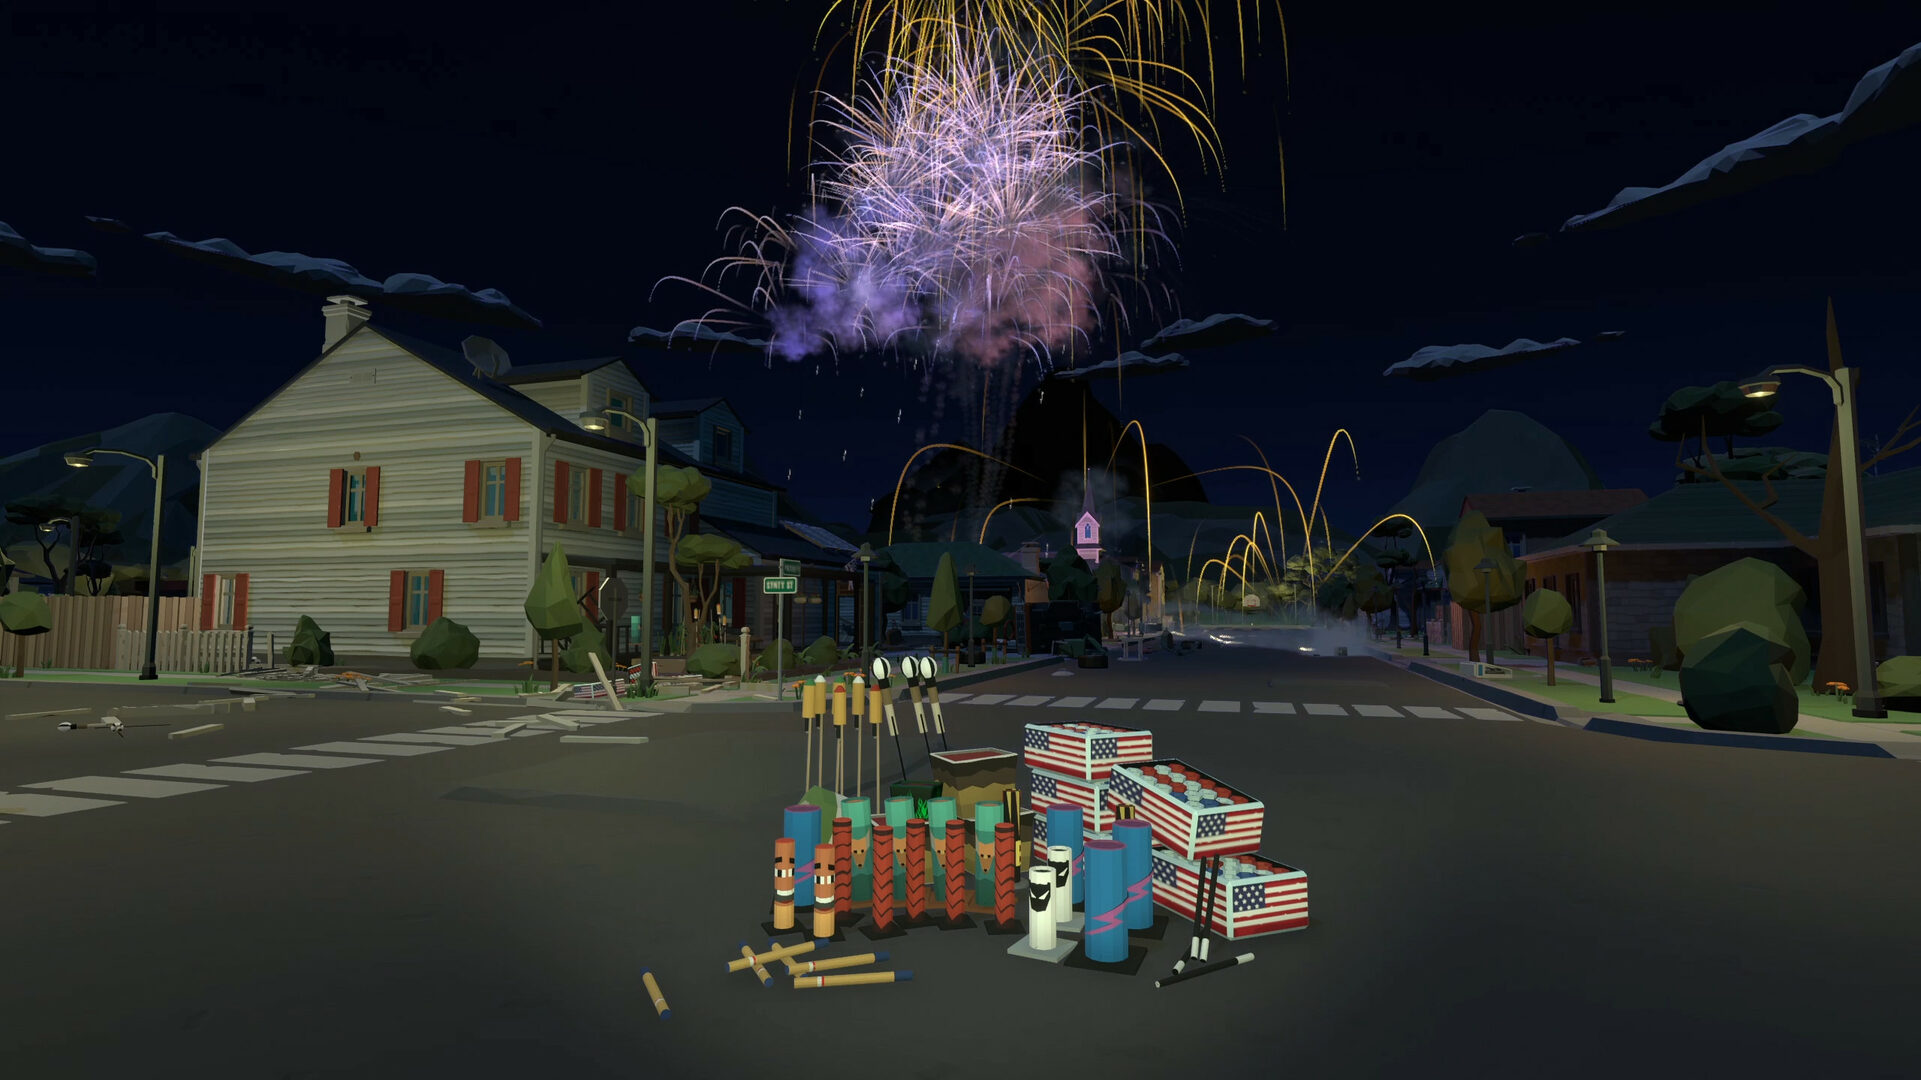 Simulador de FOGOS DE ARTIFÍCIO!!! - Jogando Fireworks Mania 